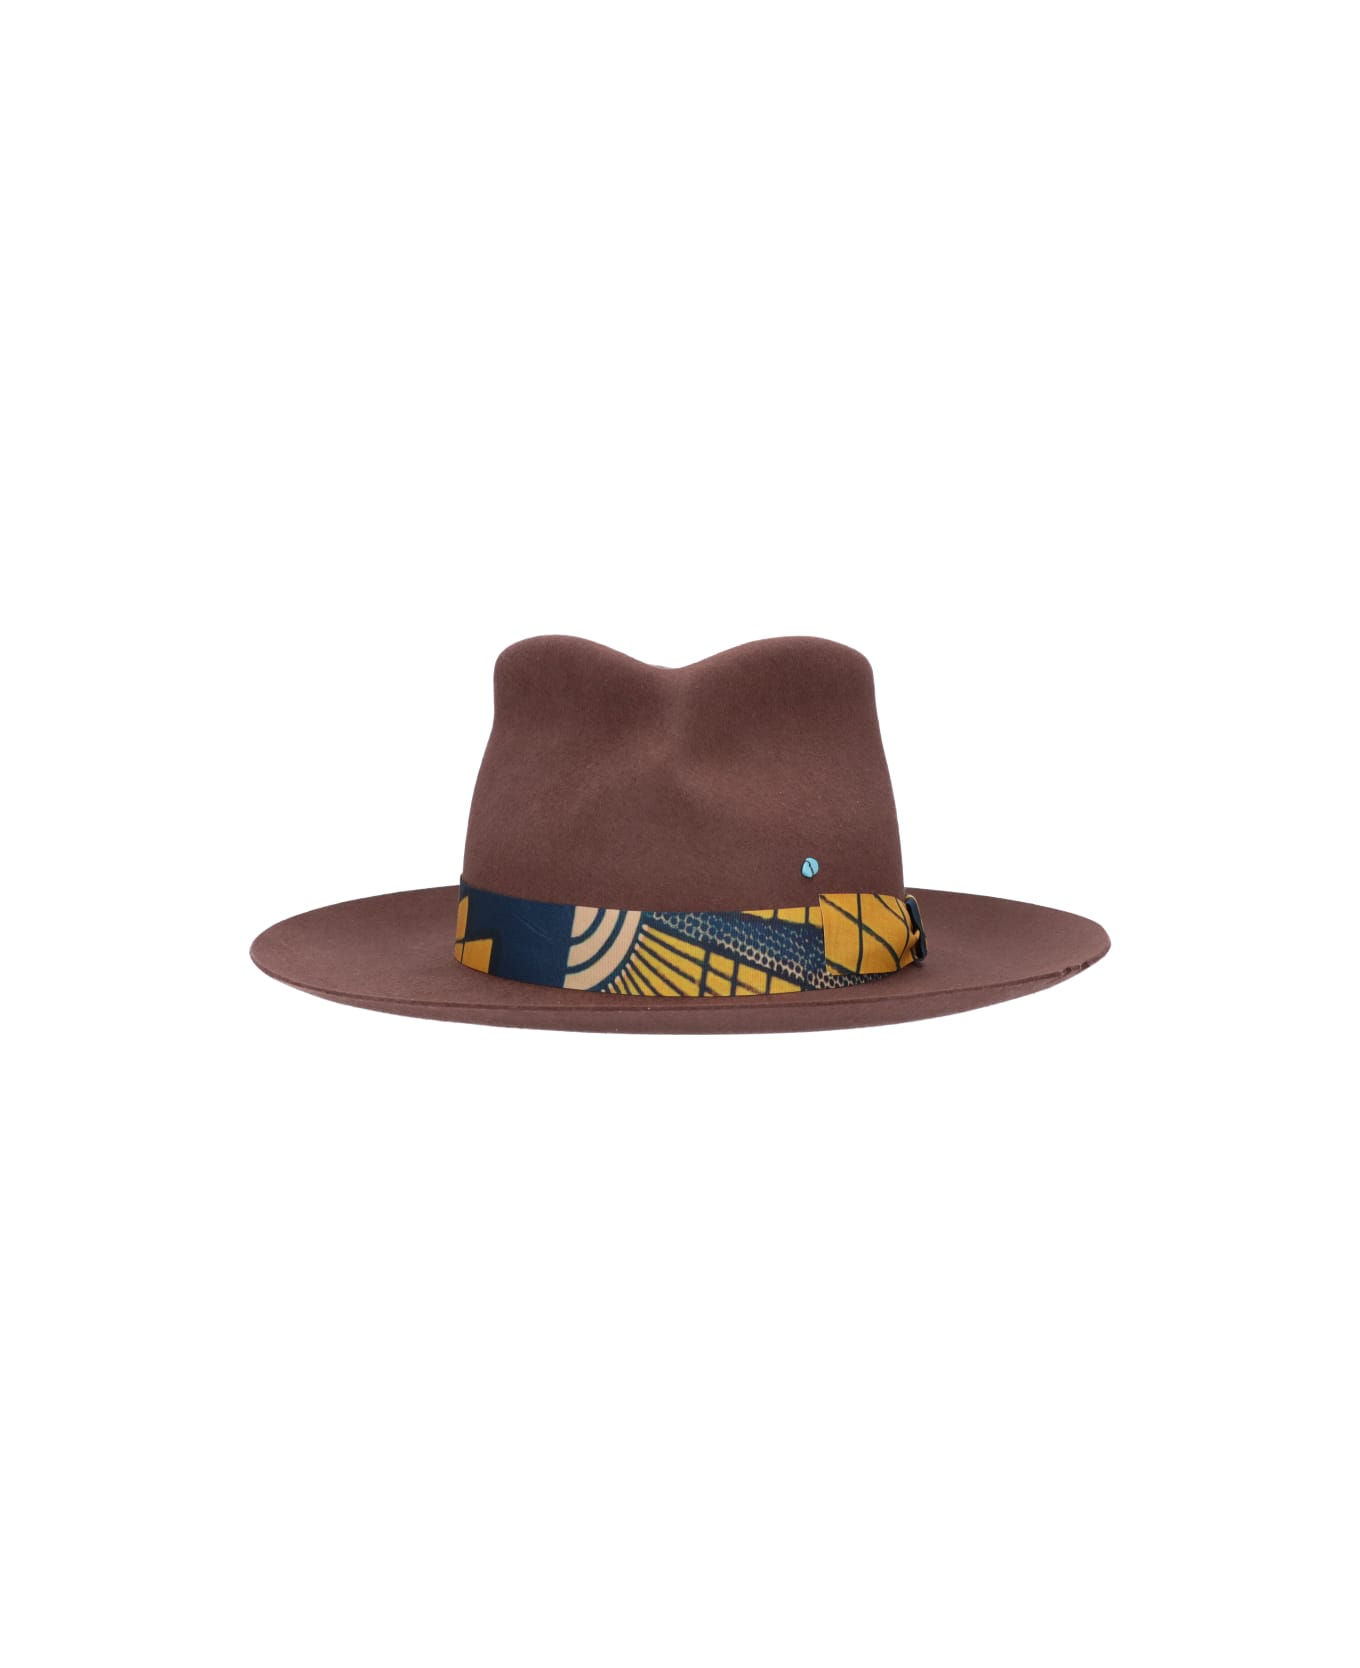 Super Duper Hats Hat key-chains - Brown